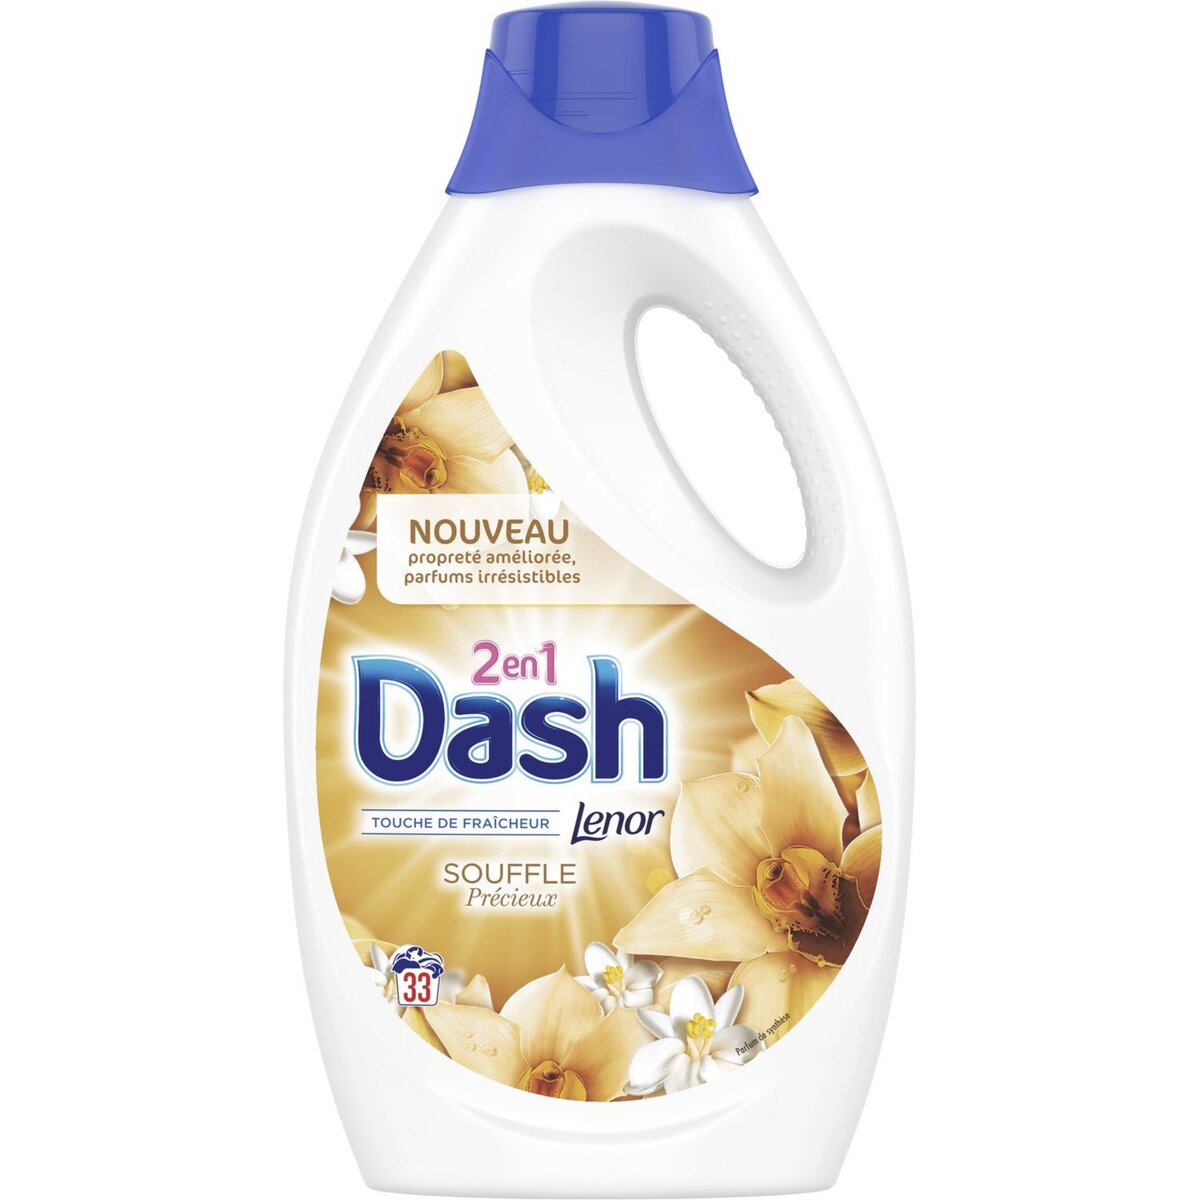 DASH Lessive liquide souffle précieux fraîcheur Lenor 33 lavages 1,815l